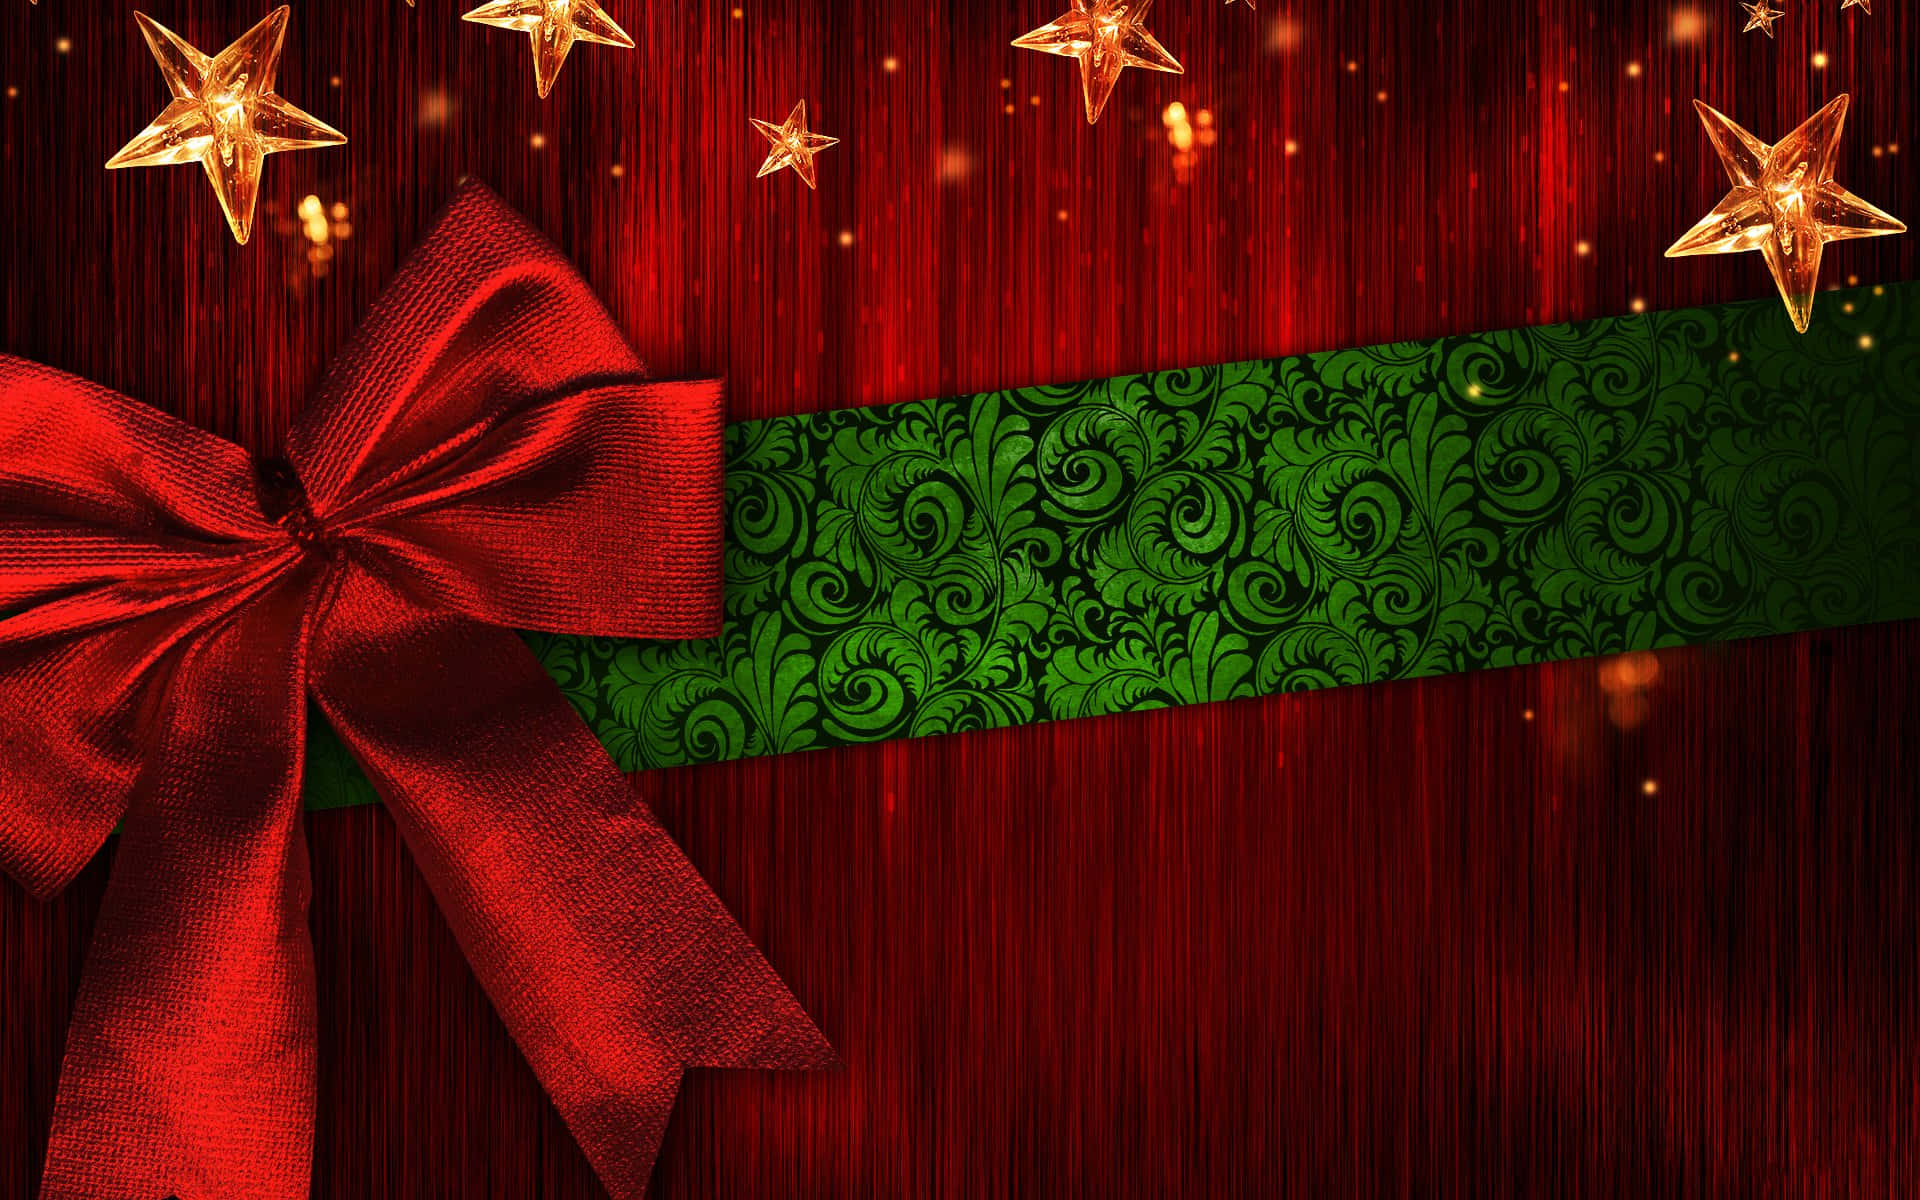 Fejr julen med den klassiske farveskema af rød og grøn. Wallpaper